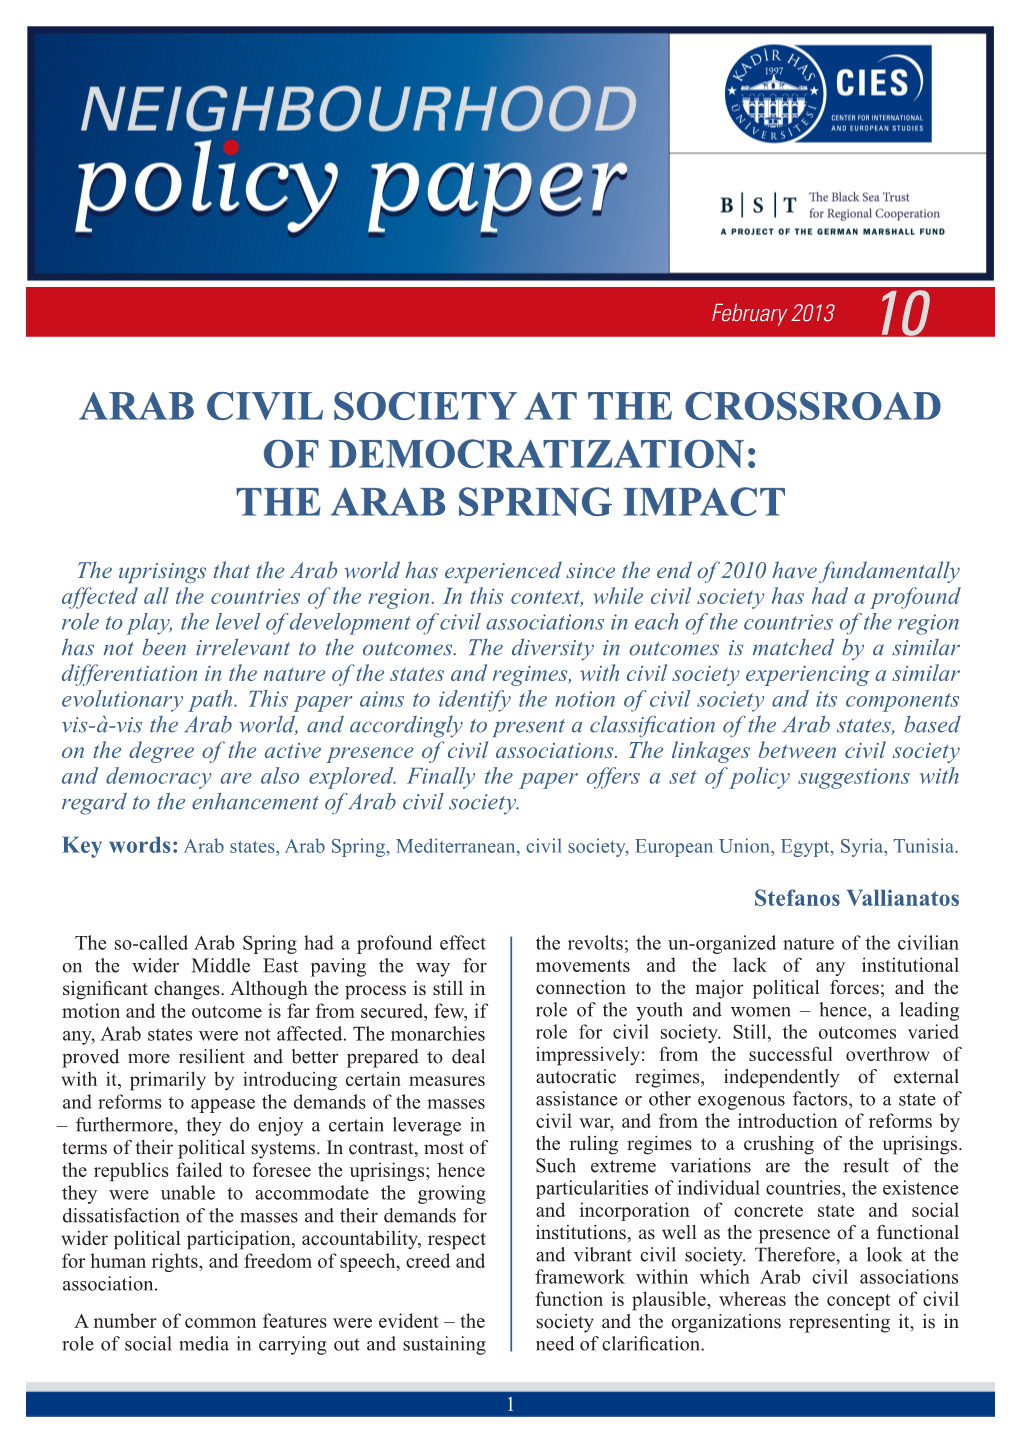 Arab Civil Society at the Crossroad of Democratization: the Arab Spring Impact